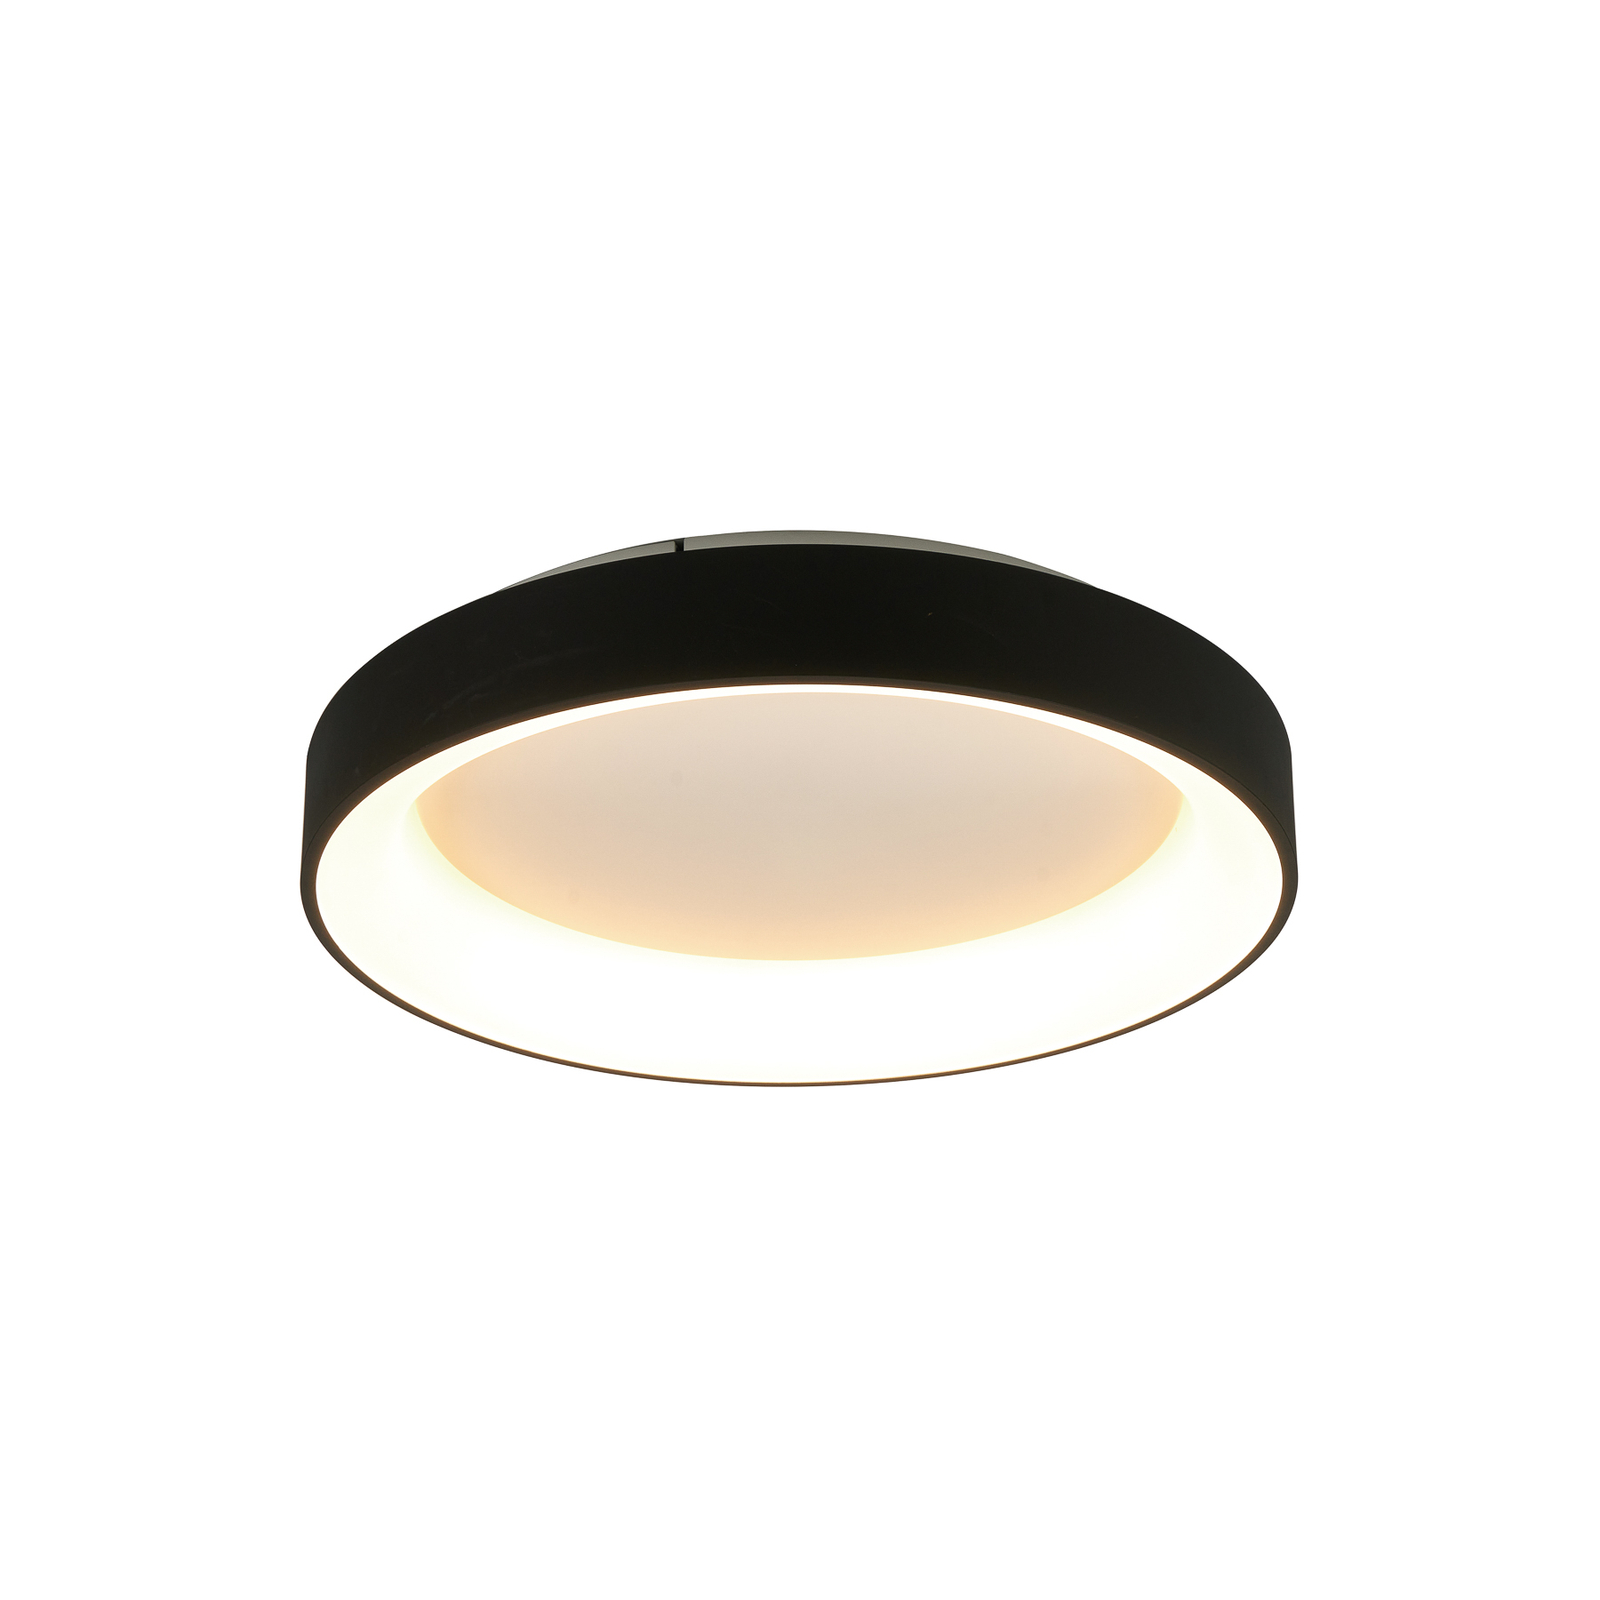 Plafondlamp Niseko II CCT afstandsbediening, Ø 38cm, zwart